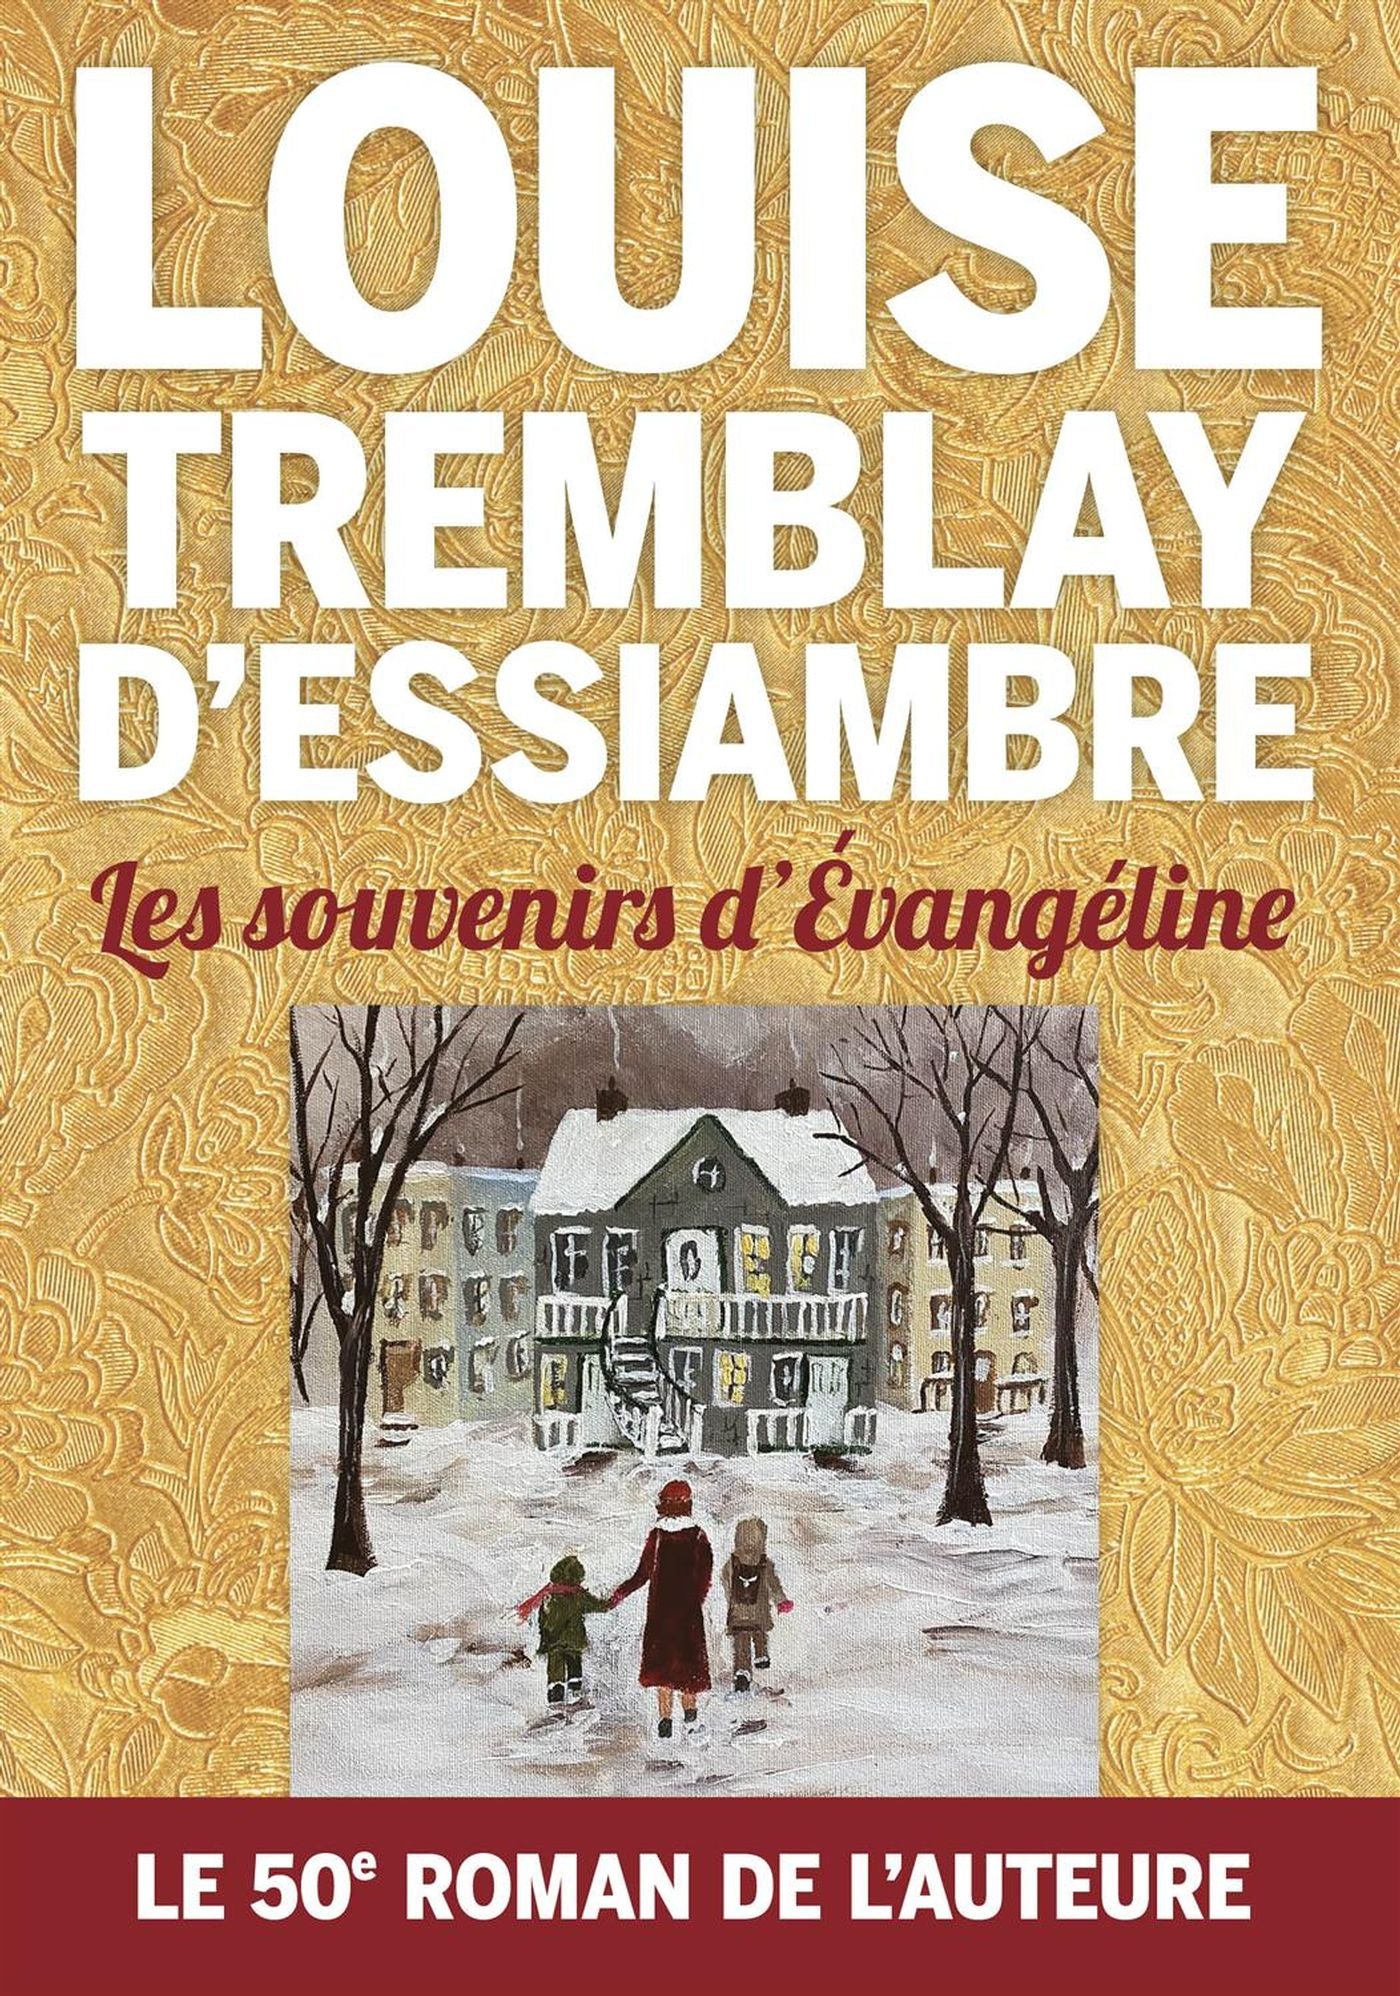 Les souvenirs d'Évangéline - Louise Tremblay D'Essiambre